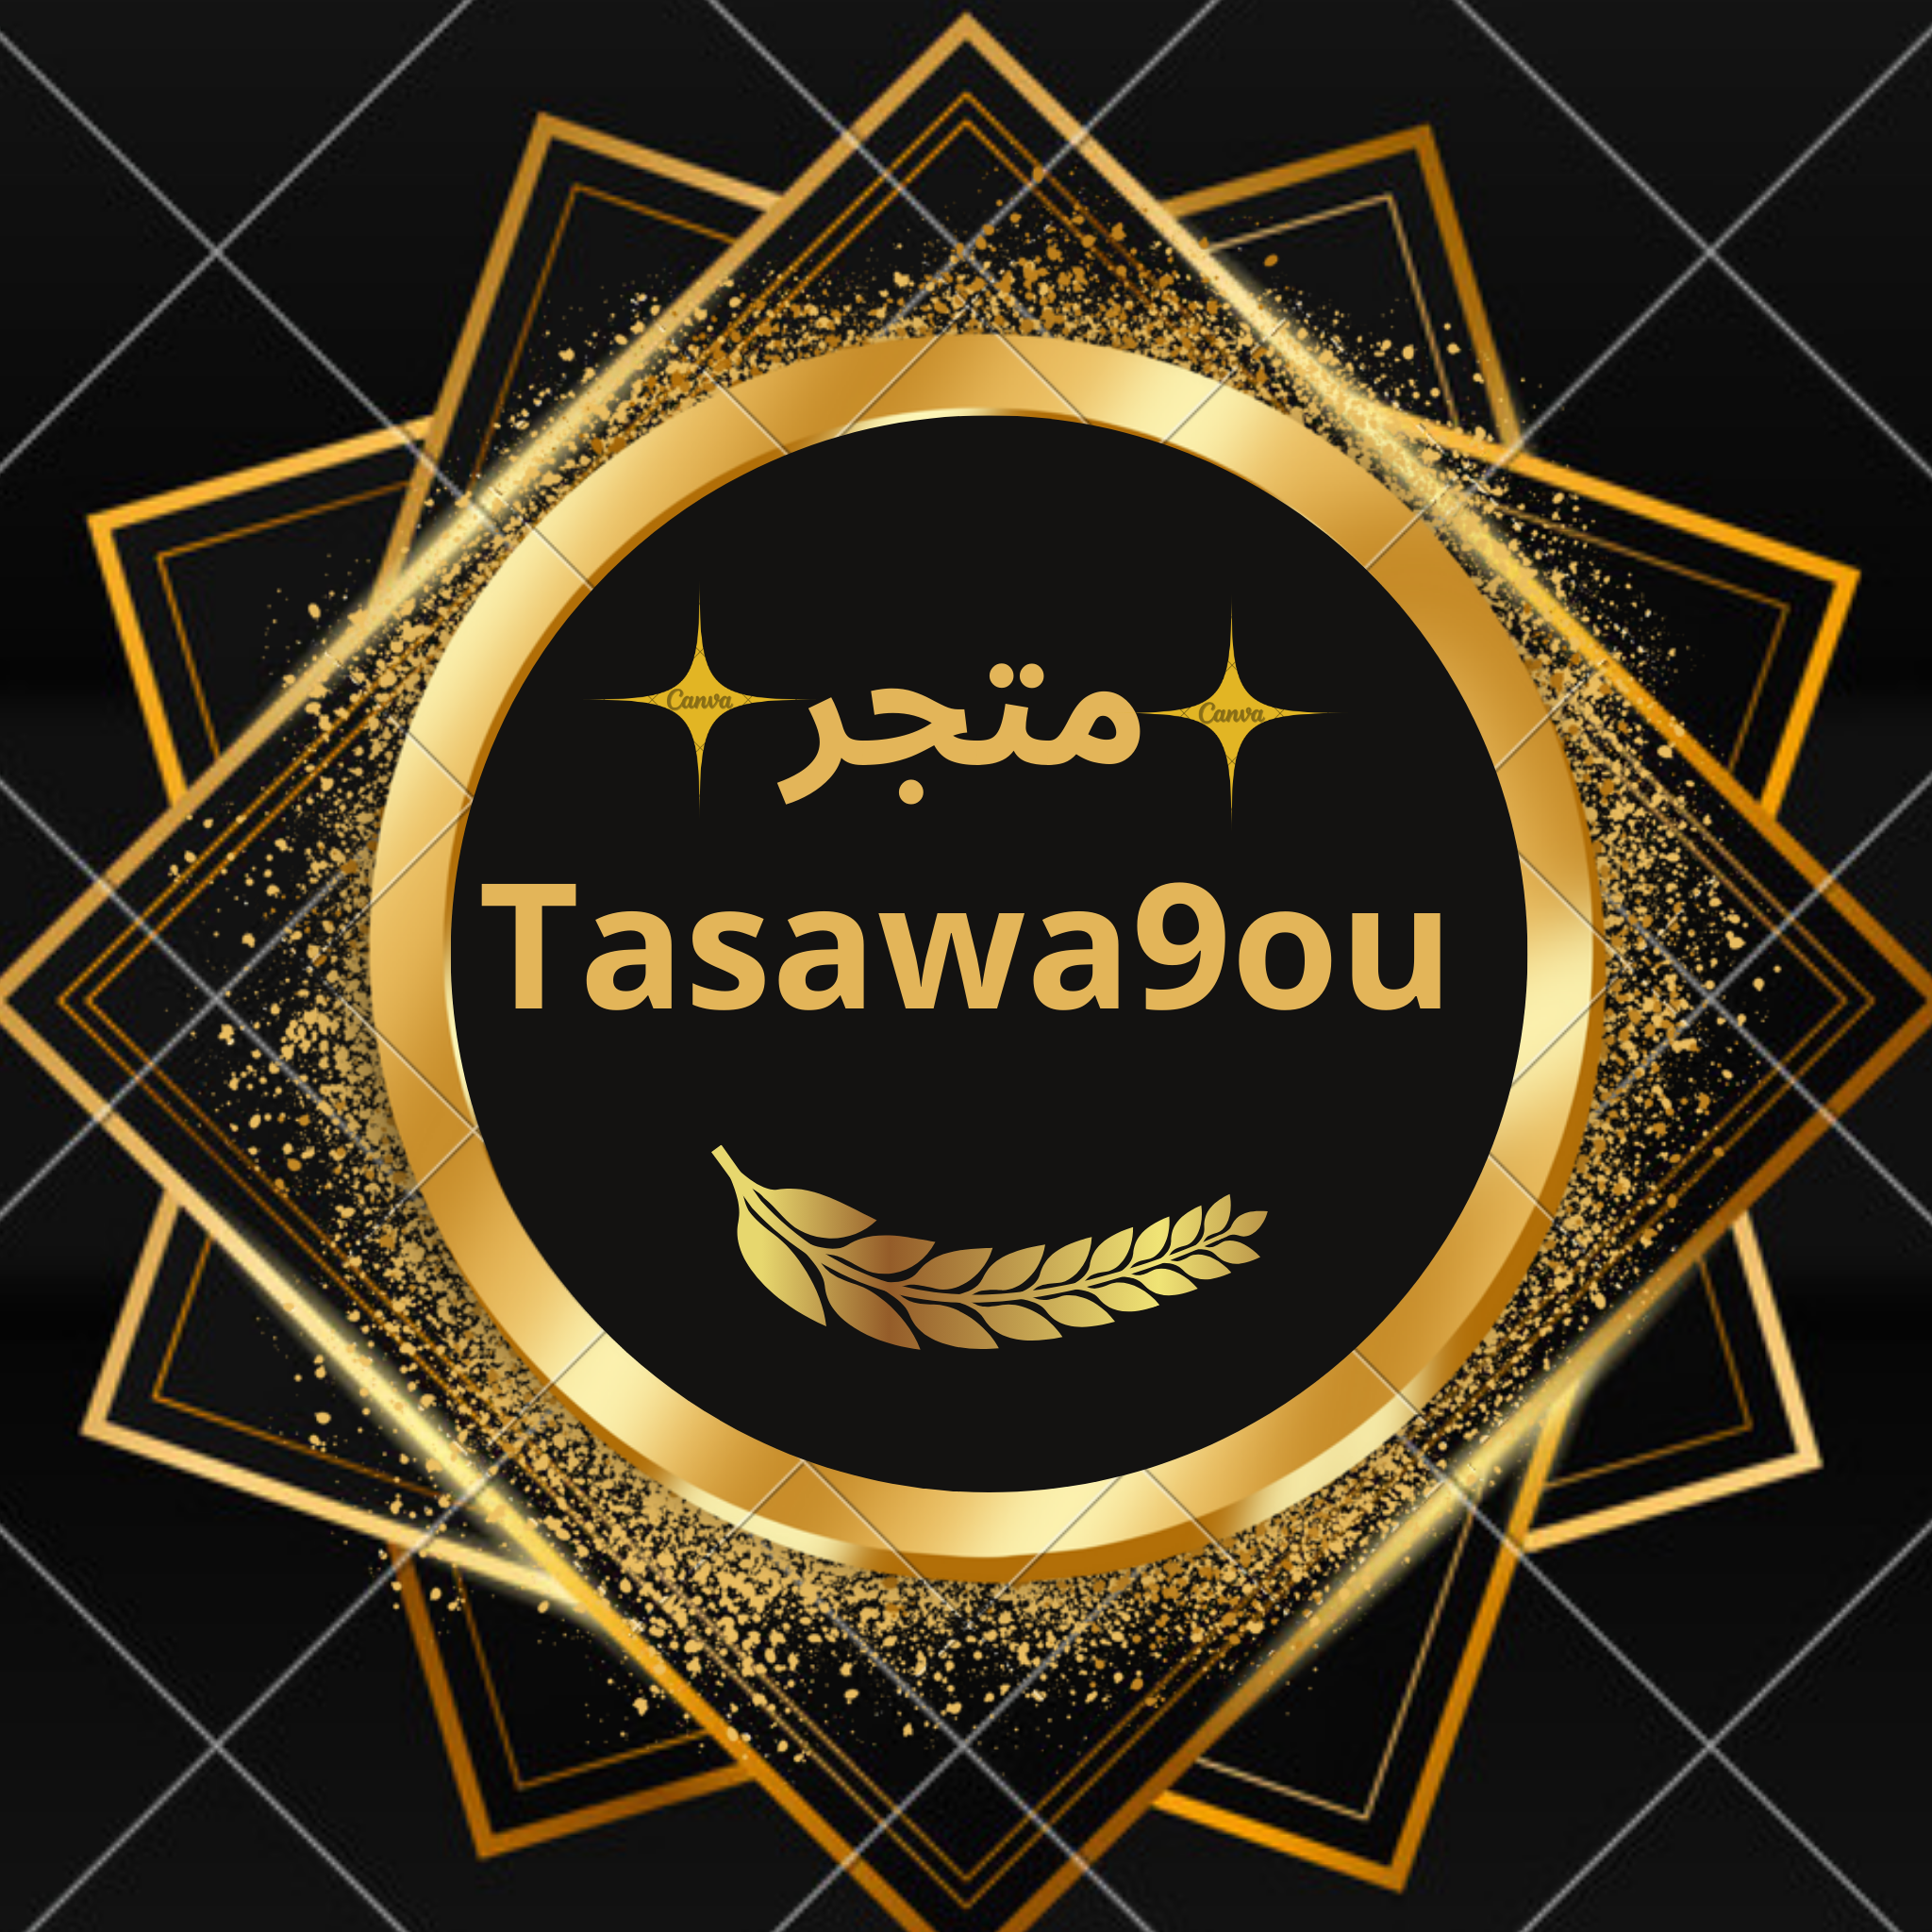 Tasawa9ou